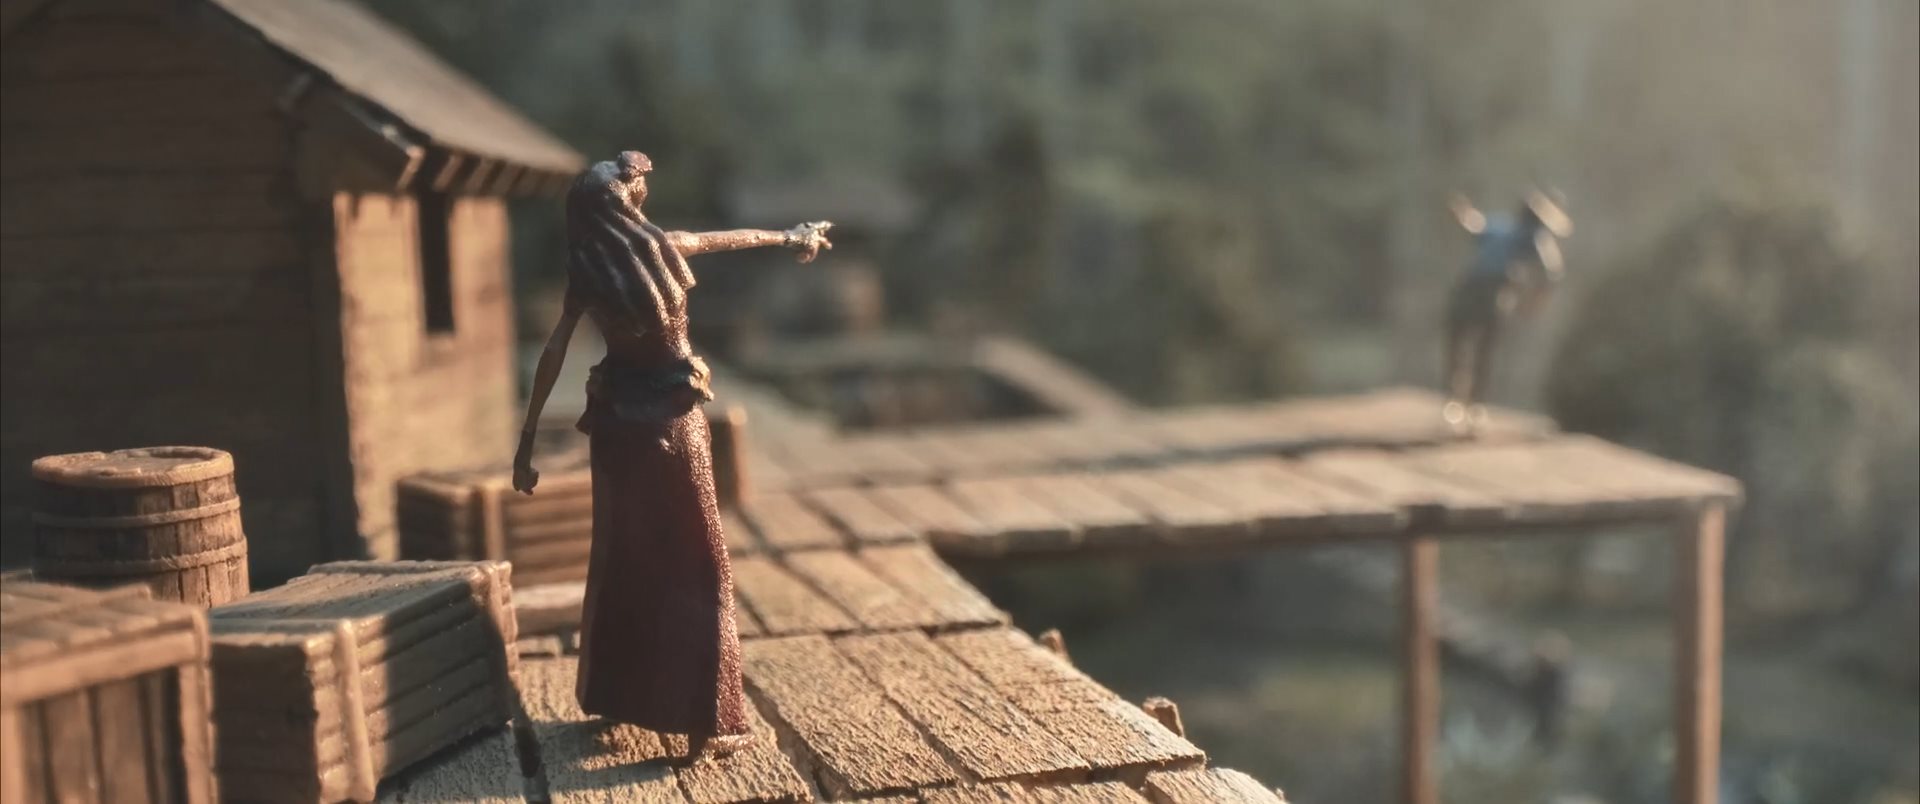 《赏金奇兵3》模型版宣传片 官方打造微缩游戏世界